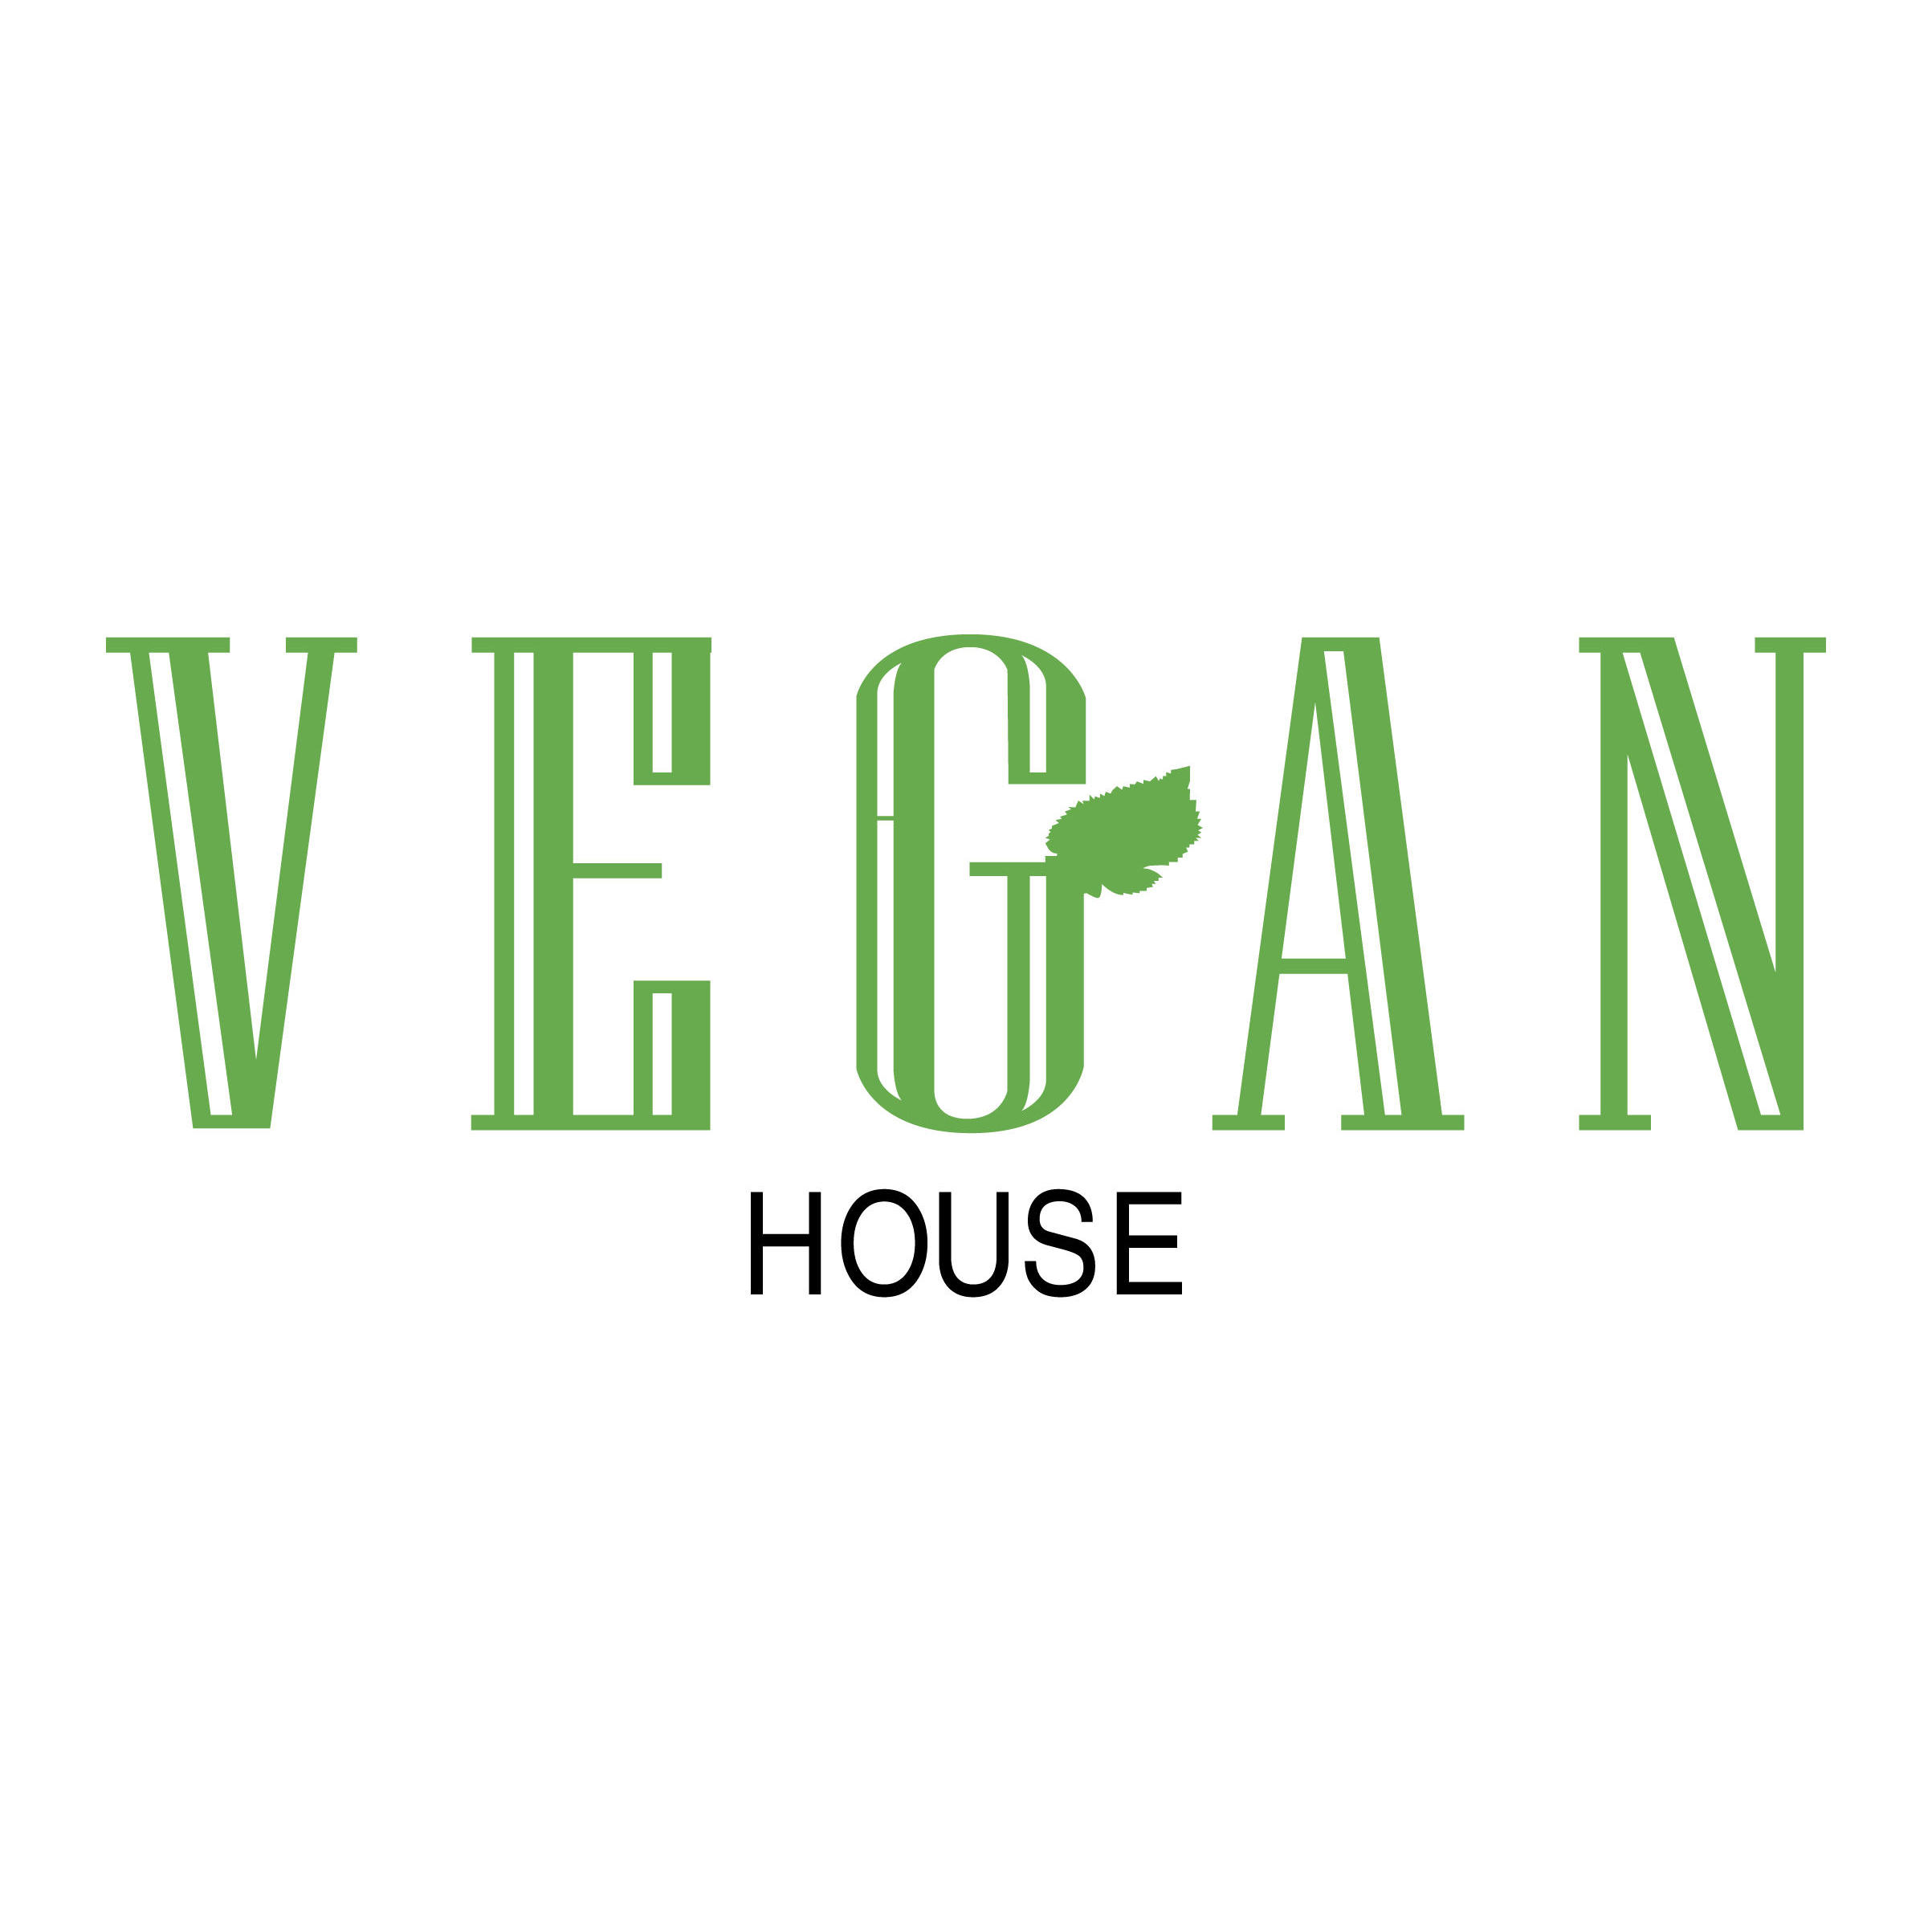 Vegan House am Schillerplatz in Dresden - Logo